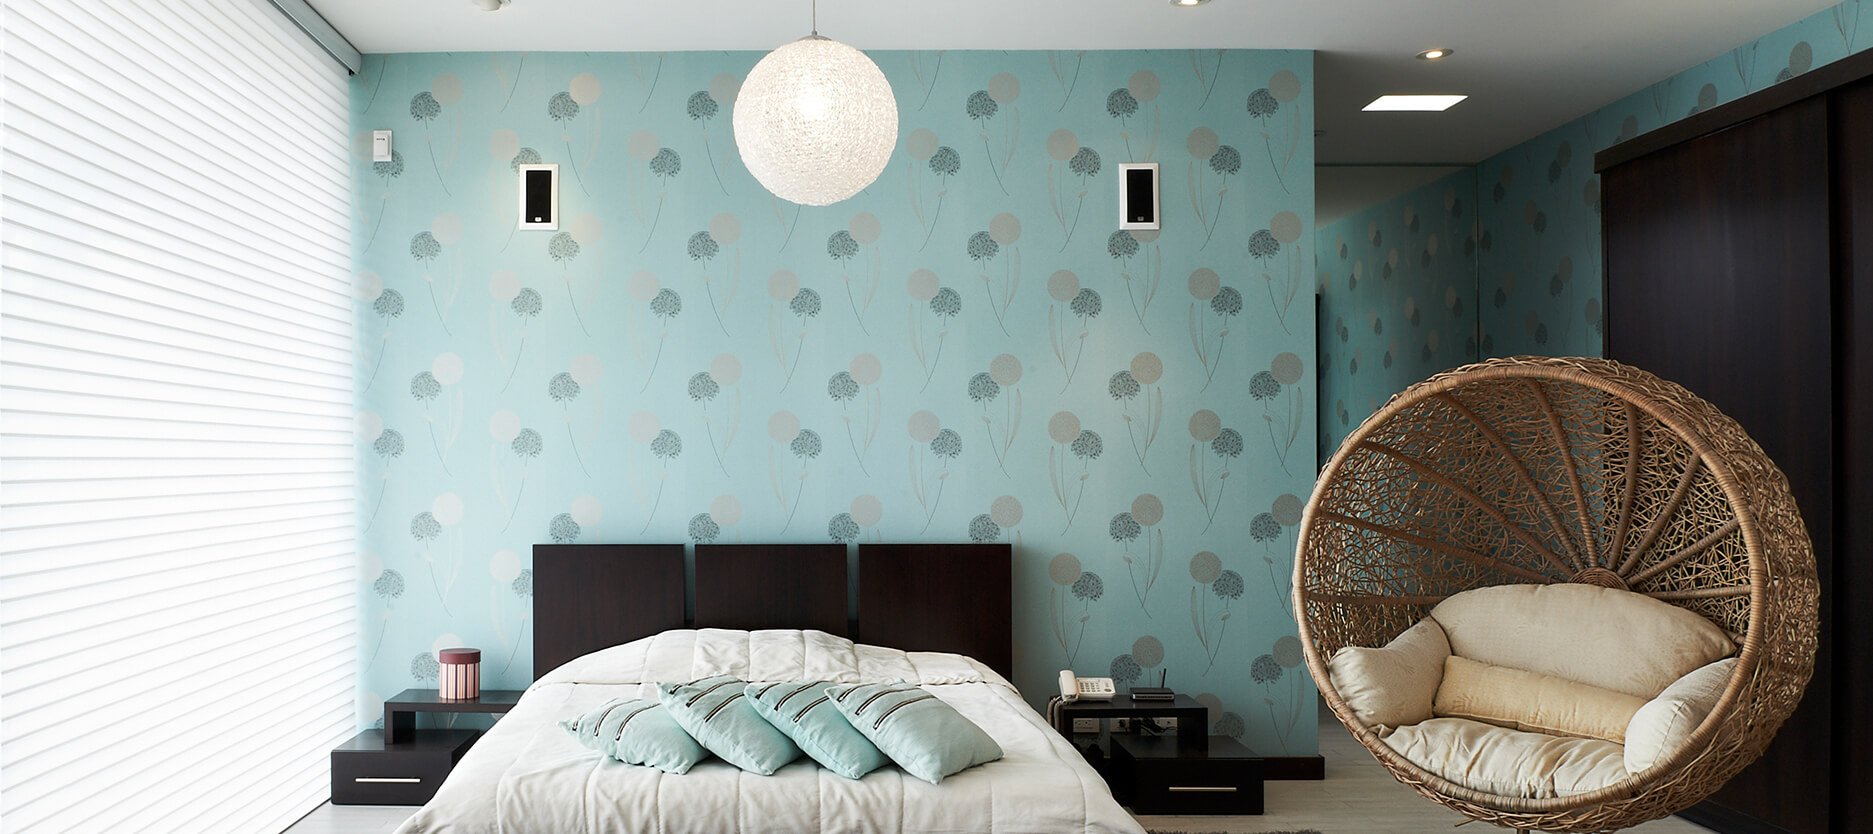 壁紙dinding kamar tidur romantis,寝室,ルーム,壁,インテリア・デザイン,家具